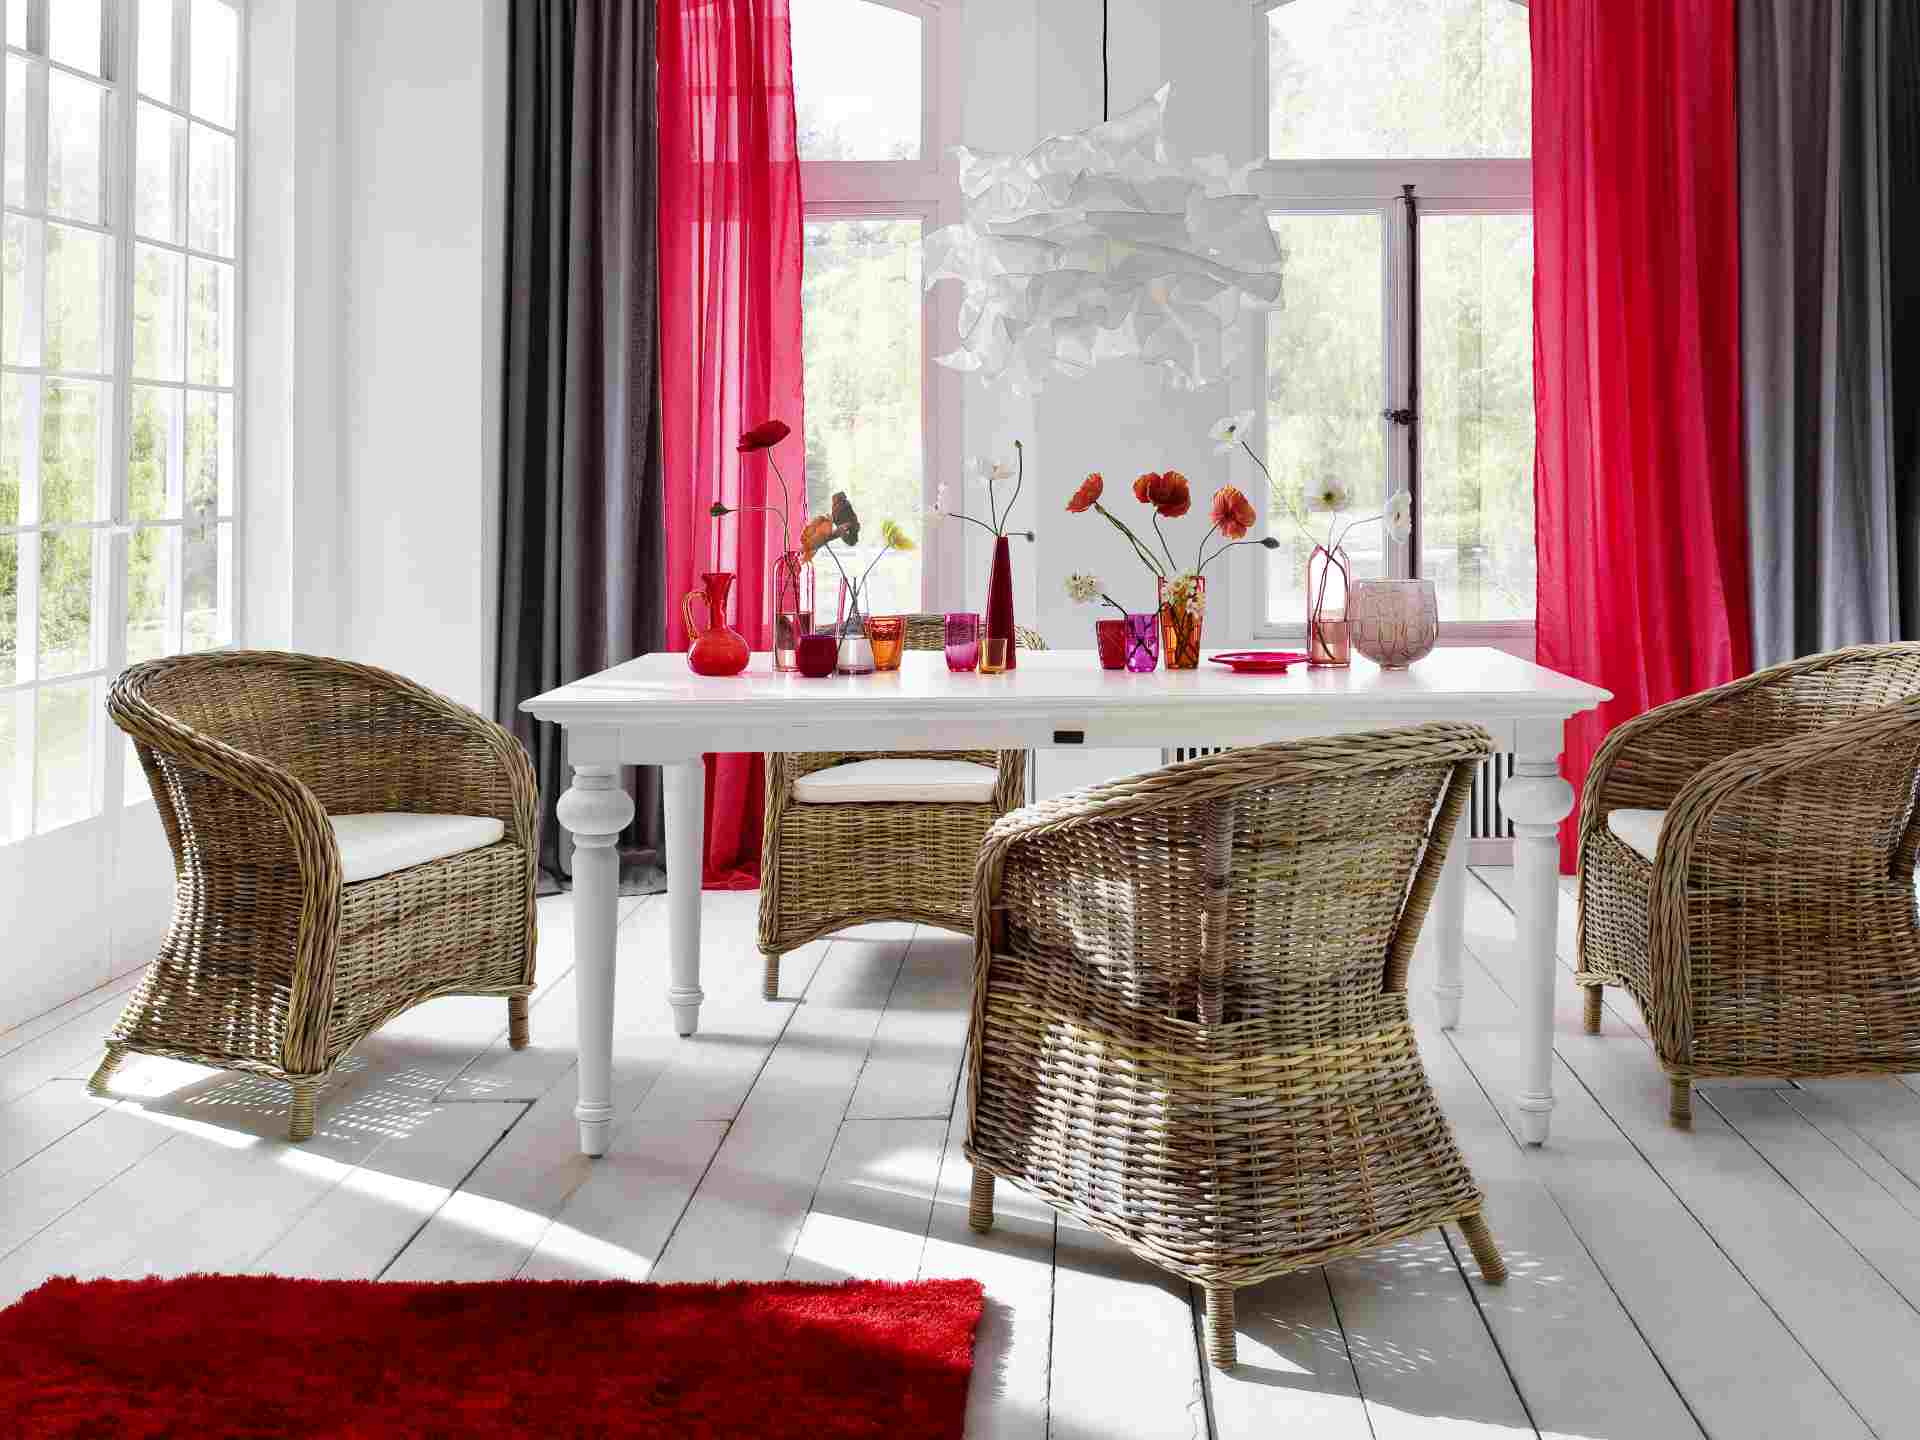 Der Esstisch Provence überzeugt mit seinem Landhaus Stil. Gefertigt wurde er aus Mahagoni Holz, welches einen weißen Farbton besitzt. Der Esstisch verfügt über eine rechteckige Form. Die Breite beträgt 200 cm.